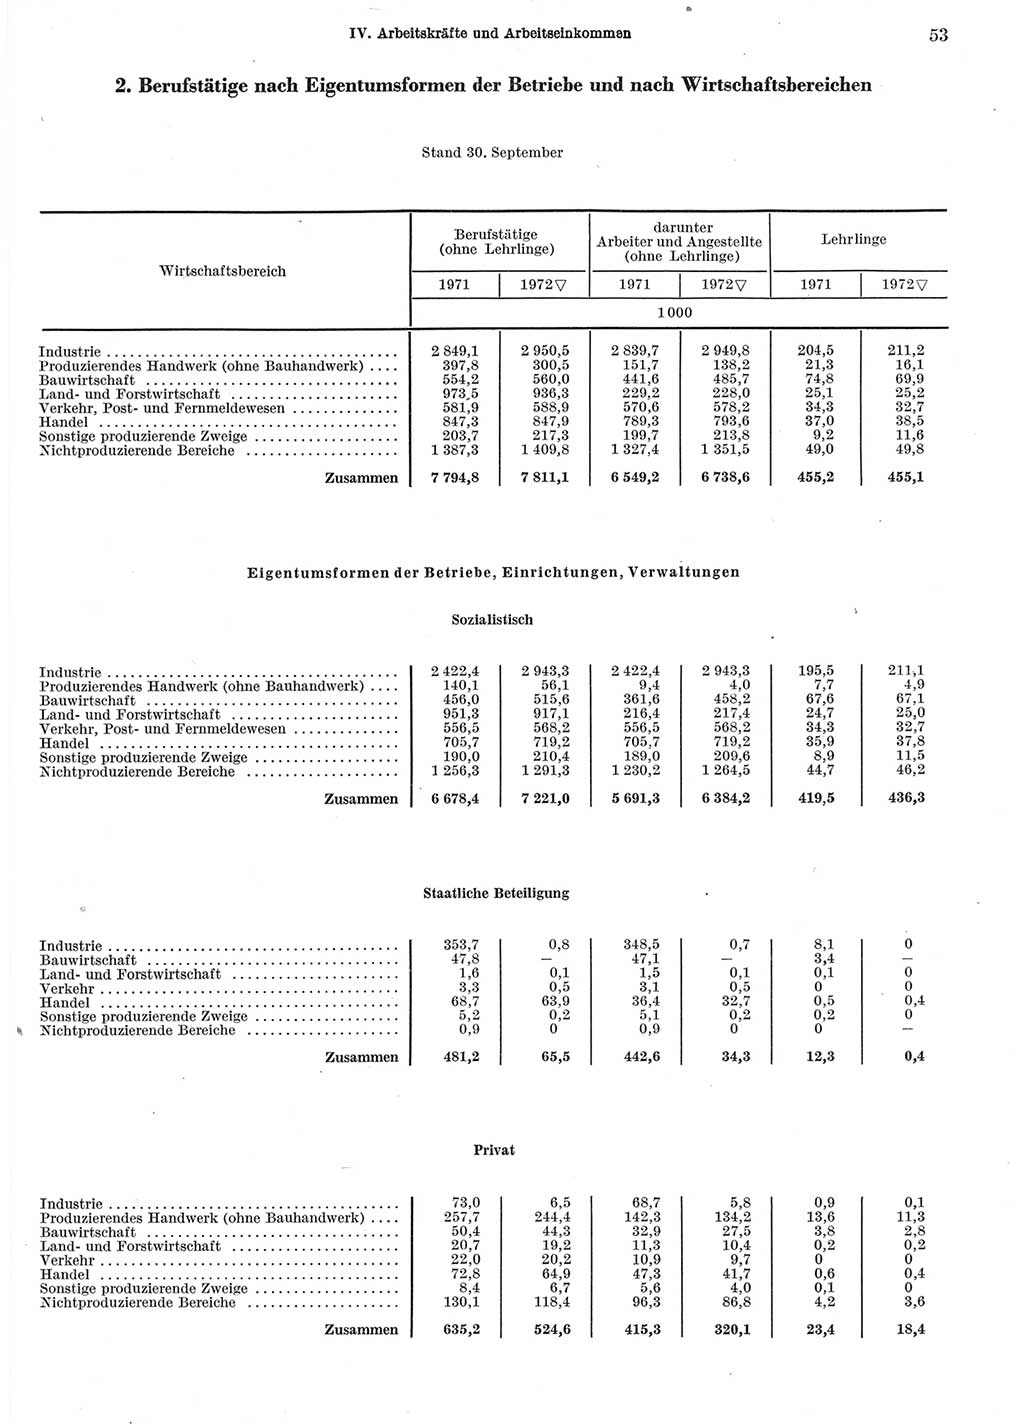 Statistisches Jahrbuch der Deutschen Demokratischen Republik (DDR) 1973, Seite 53 (Stat. Jb. DDR 1973, S. 53)